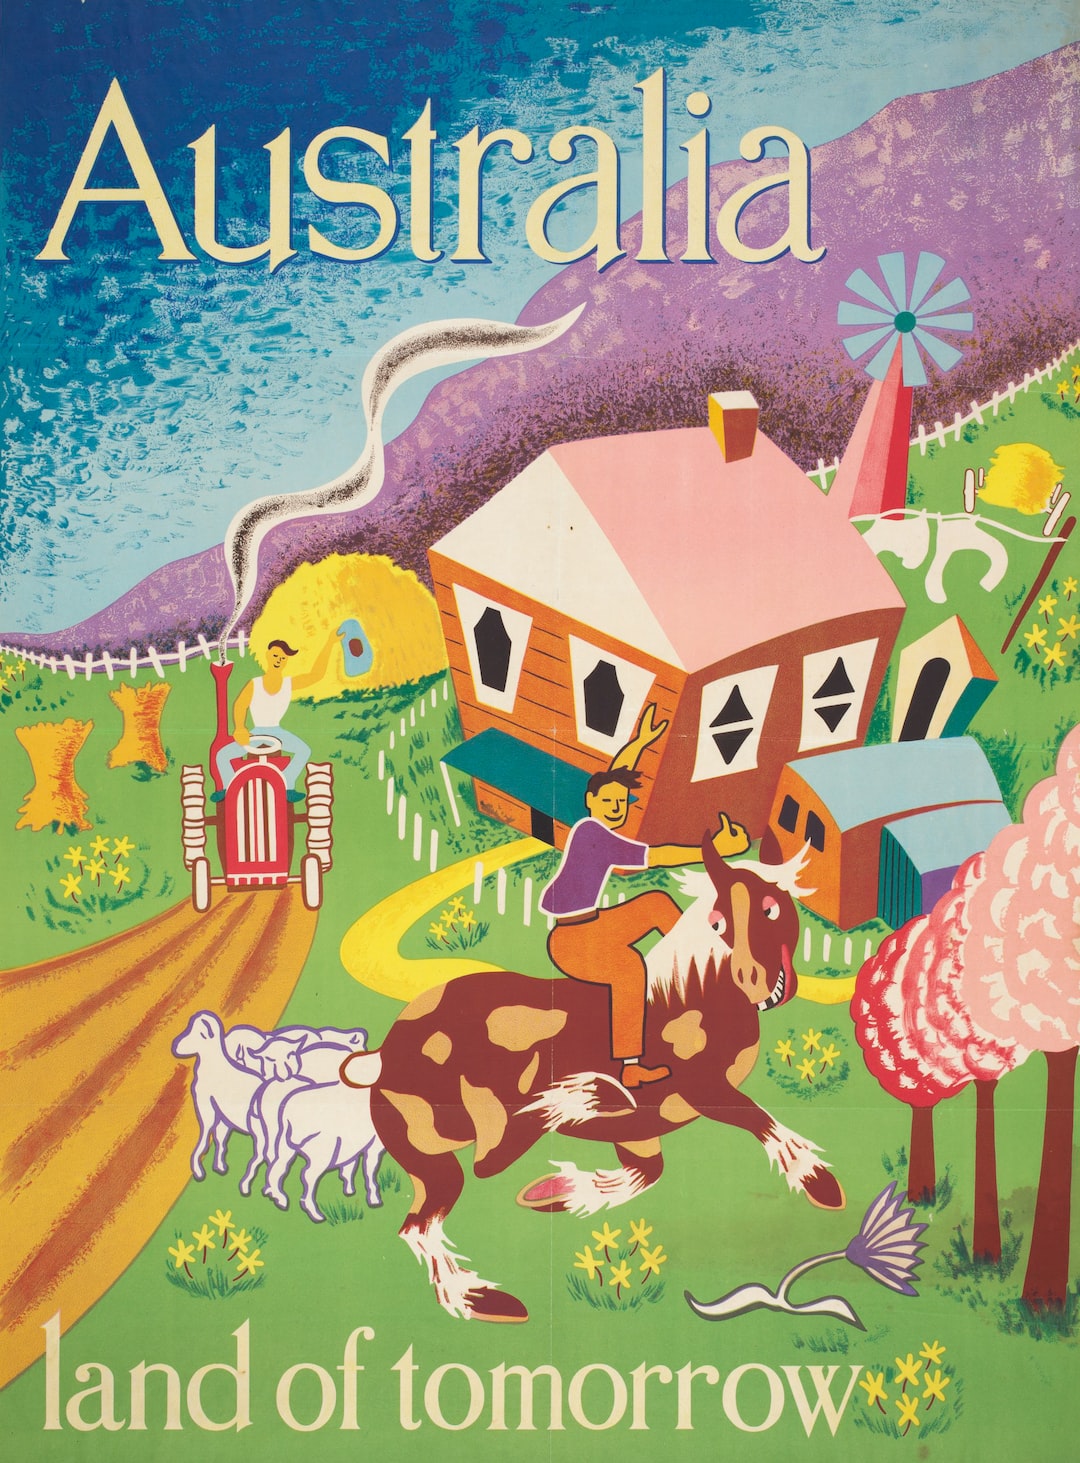 Poster - Australia Land of Tomorrow, circa 1948